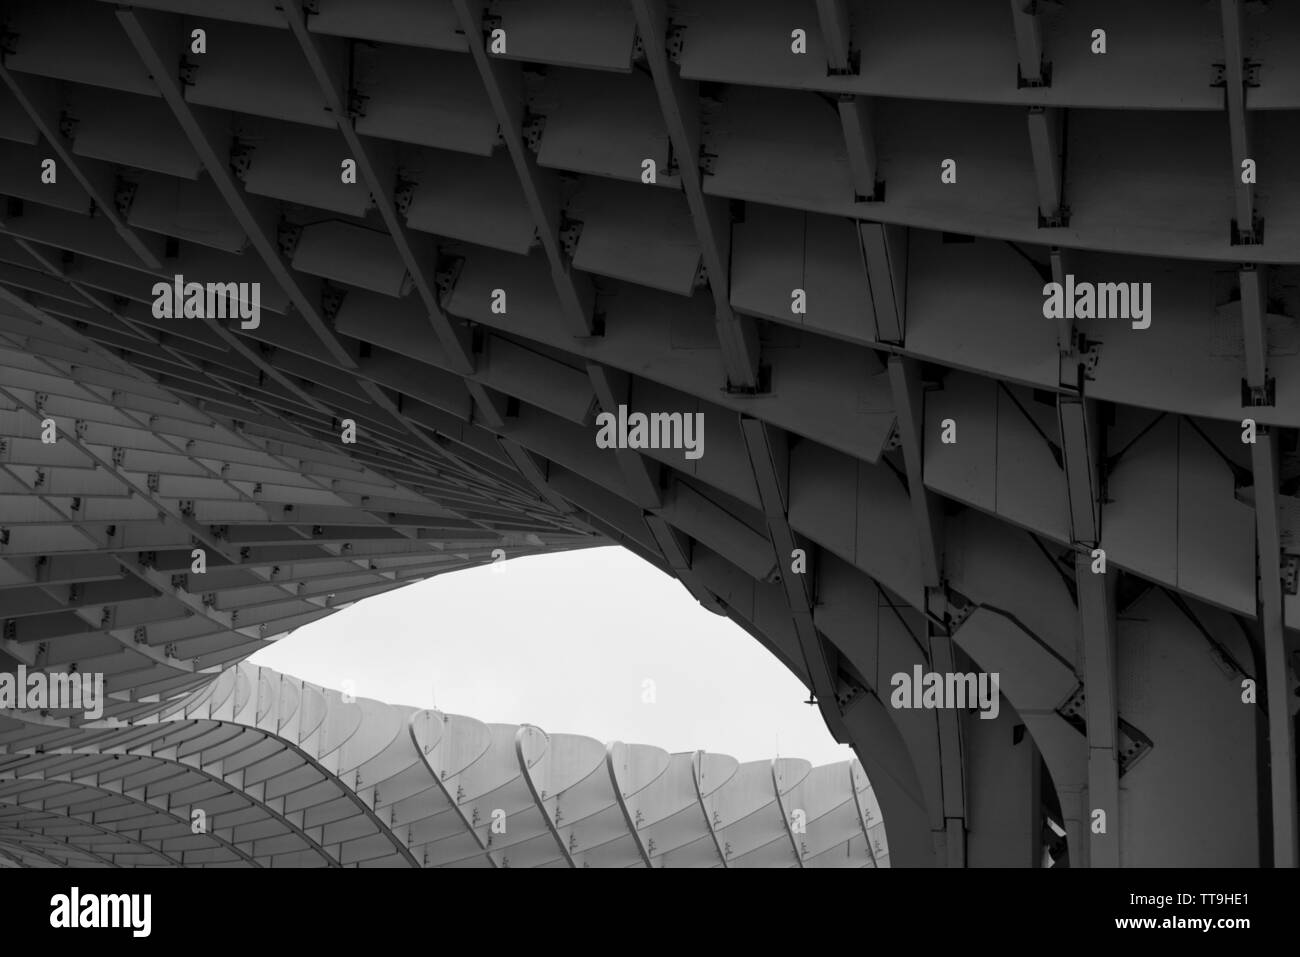 Holz- architektonische Konstruktion von Metropol Parasol in Sevilla, Andalusien, Spanien. Entworfen von deutschen Architekten Jürgen Mayer, mit red dot de ausgezeichnet Stockfoto